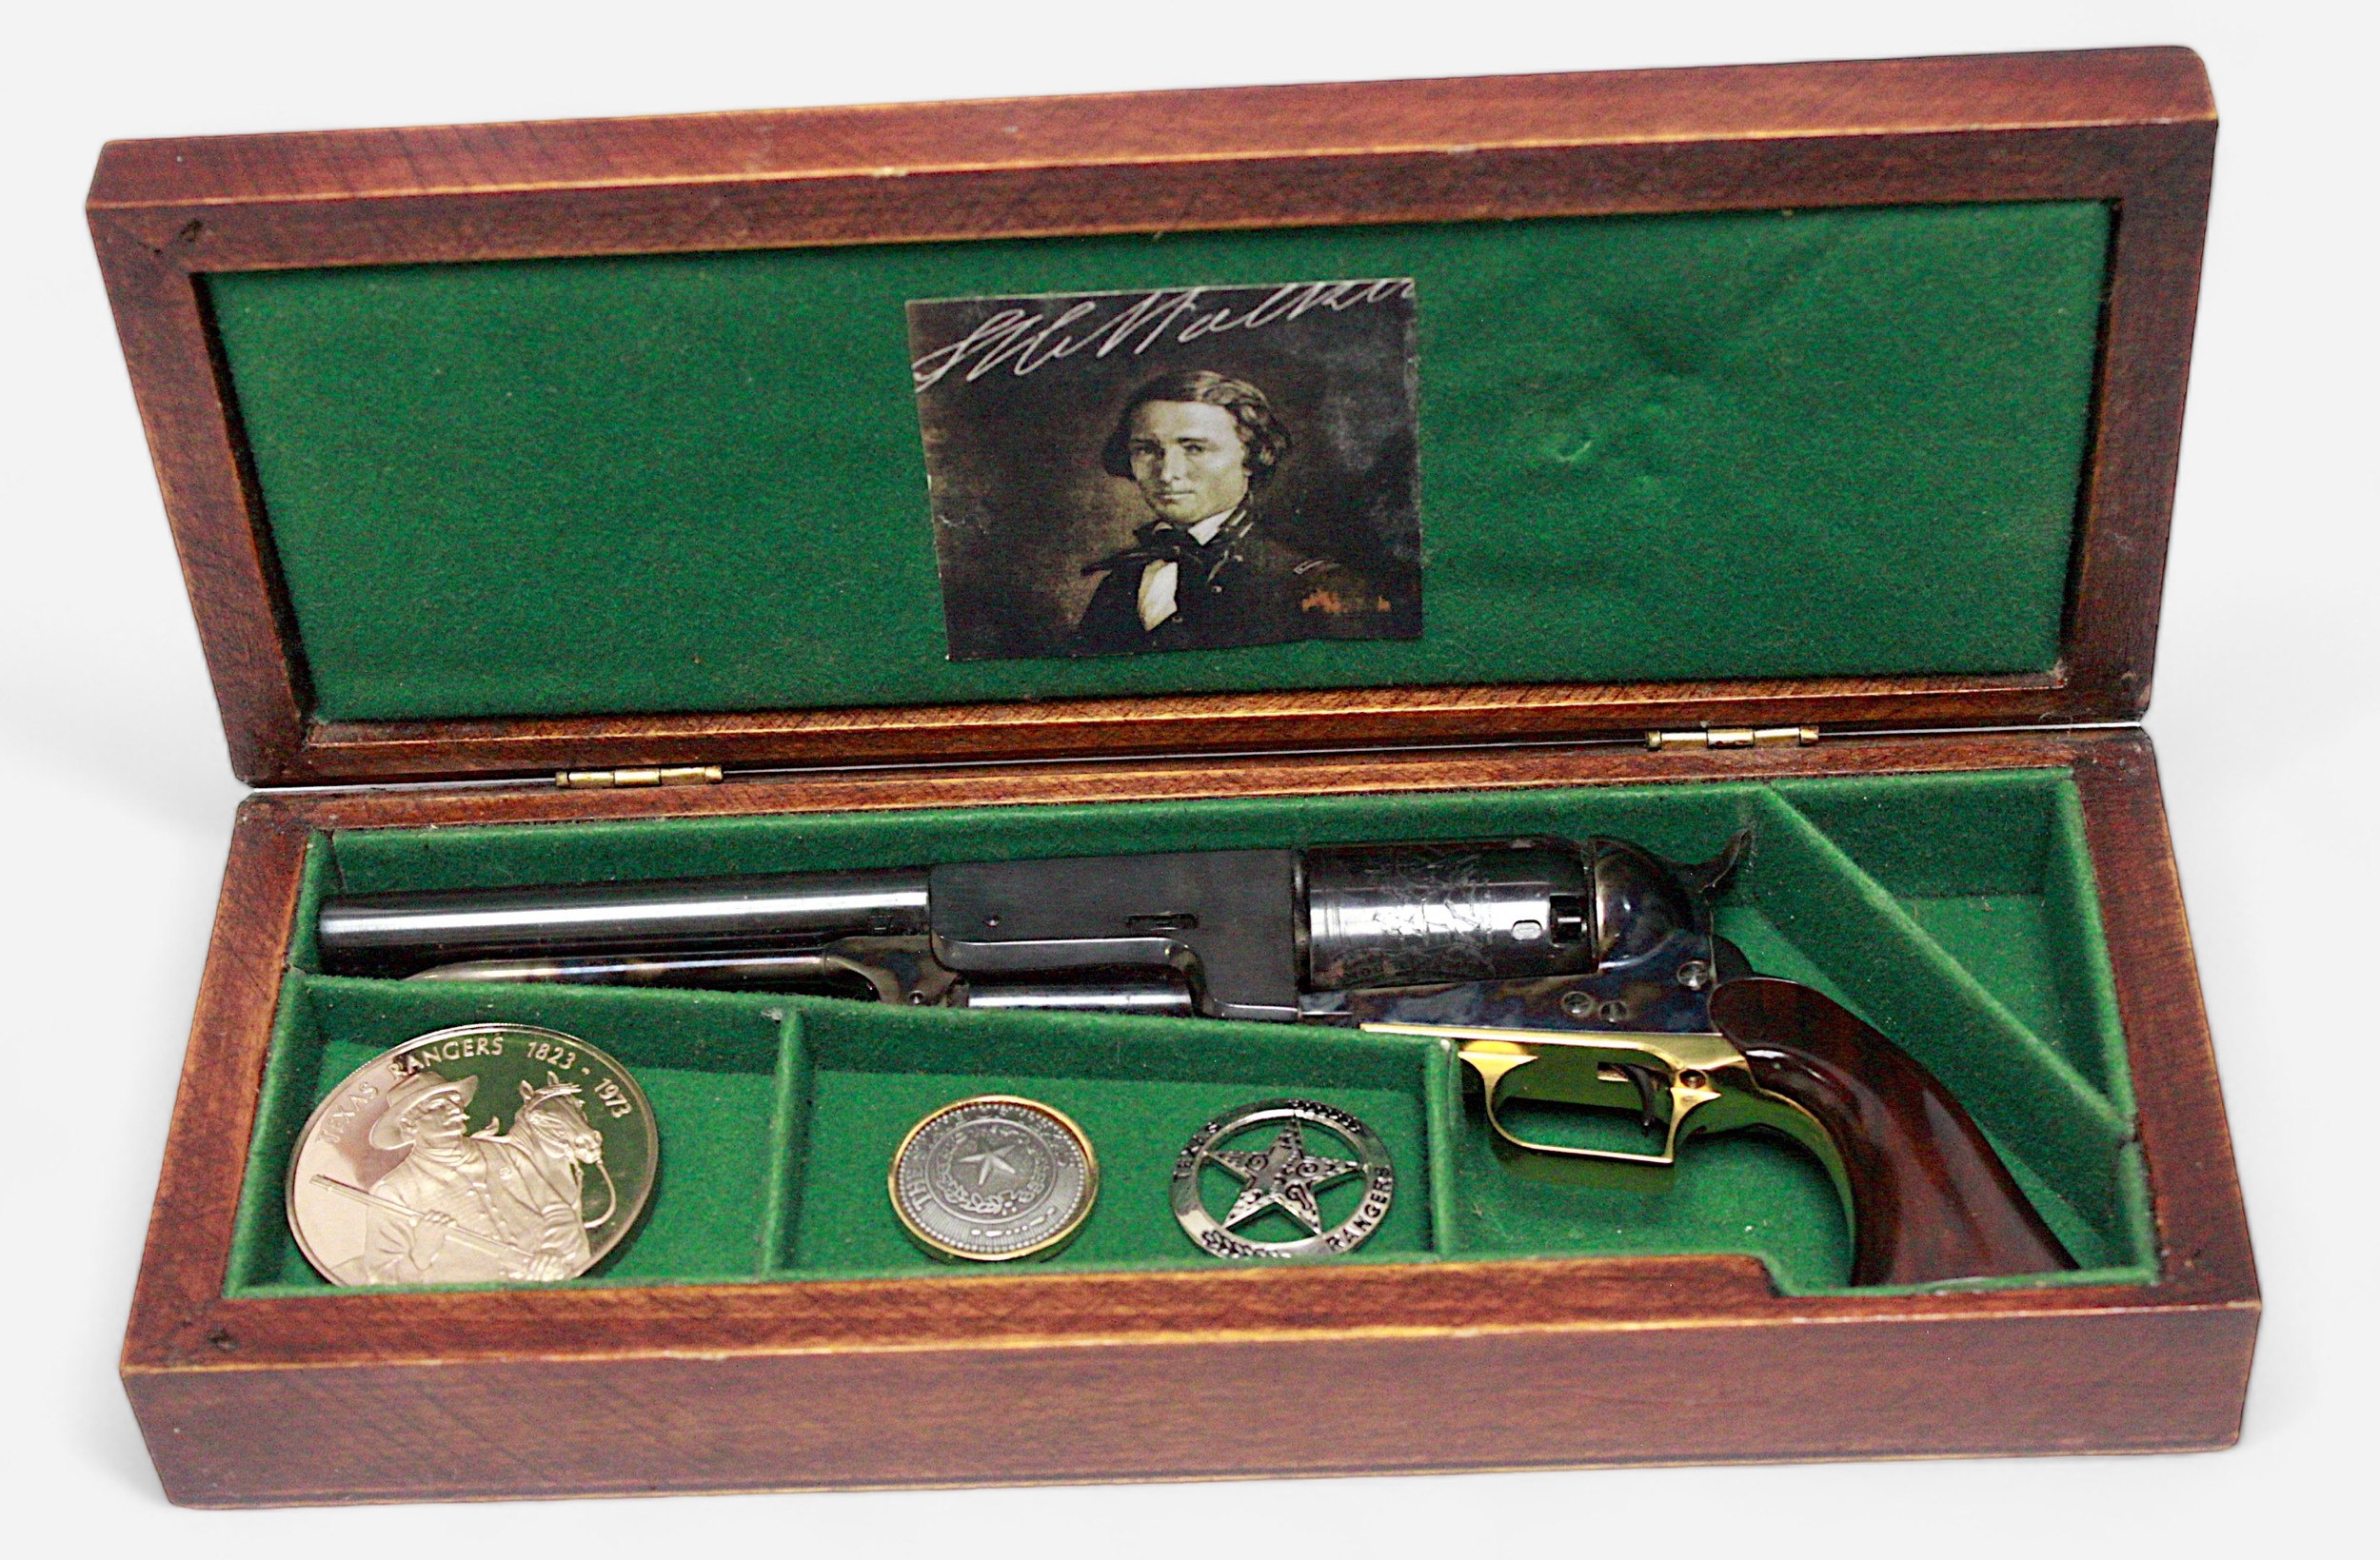 An 1847 Walker Colt Miniature - an inert miniature scale reproduction six shot revolver, USMR